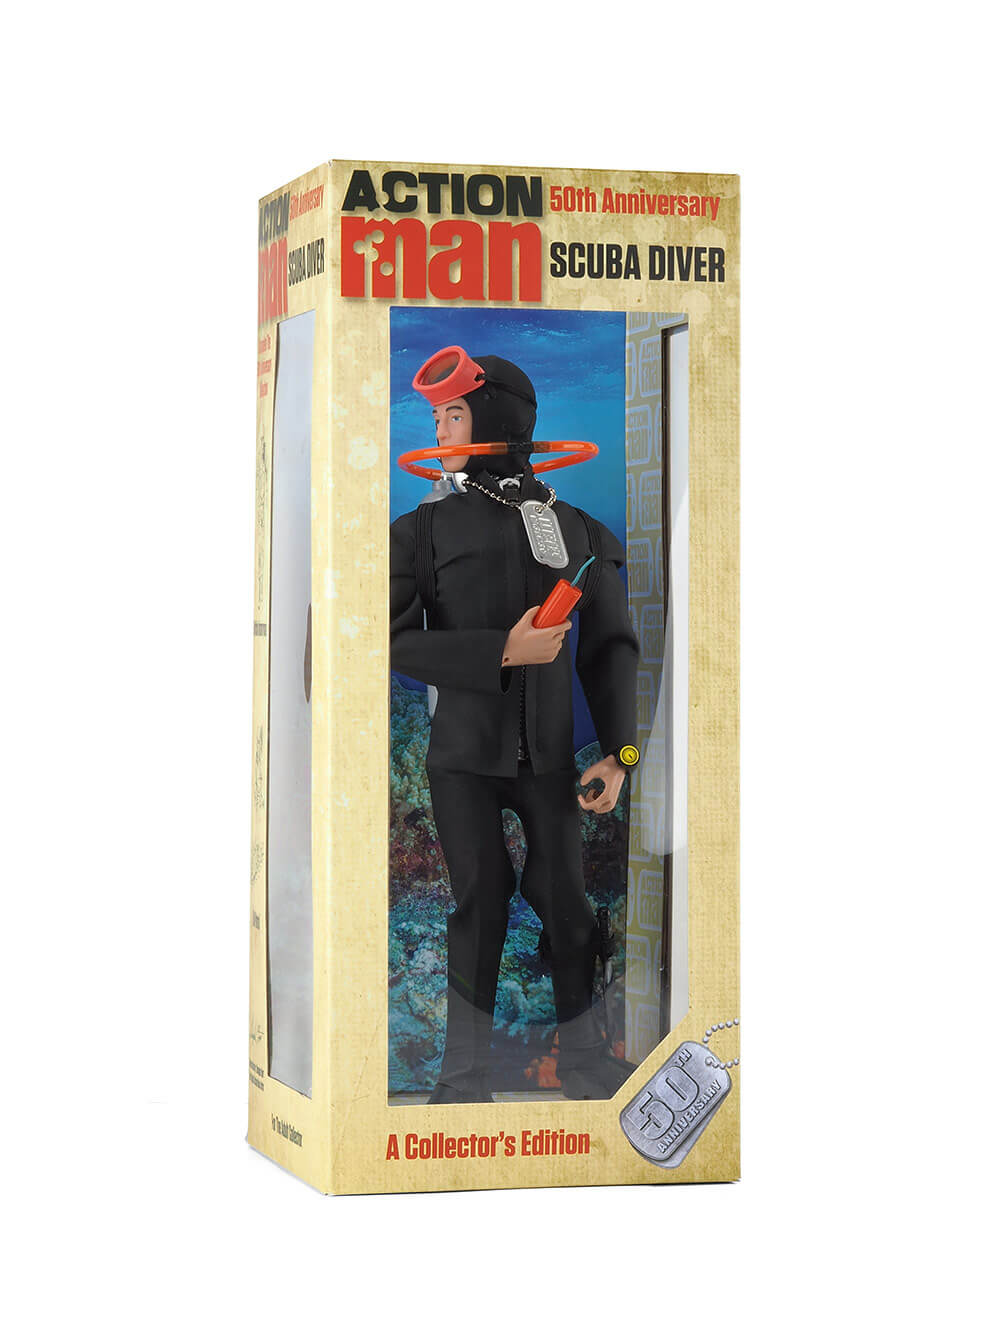 Action Man 50th Anniversary Scuba Diver Box